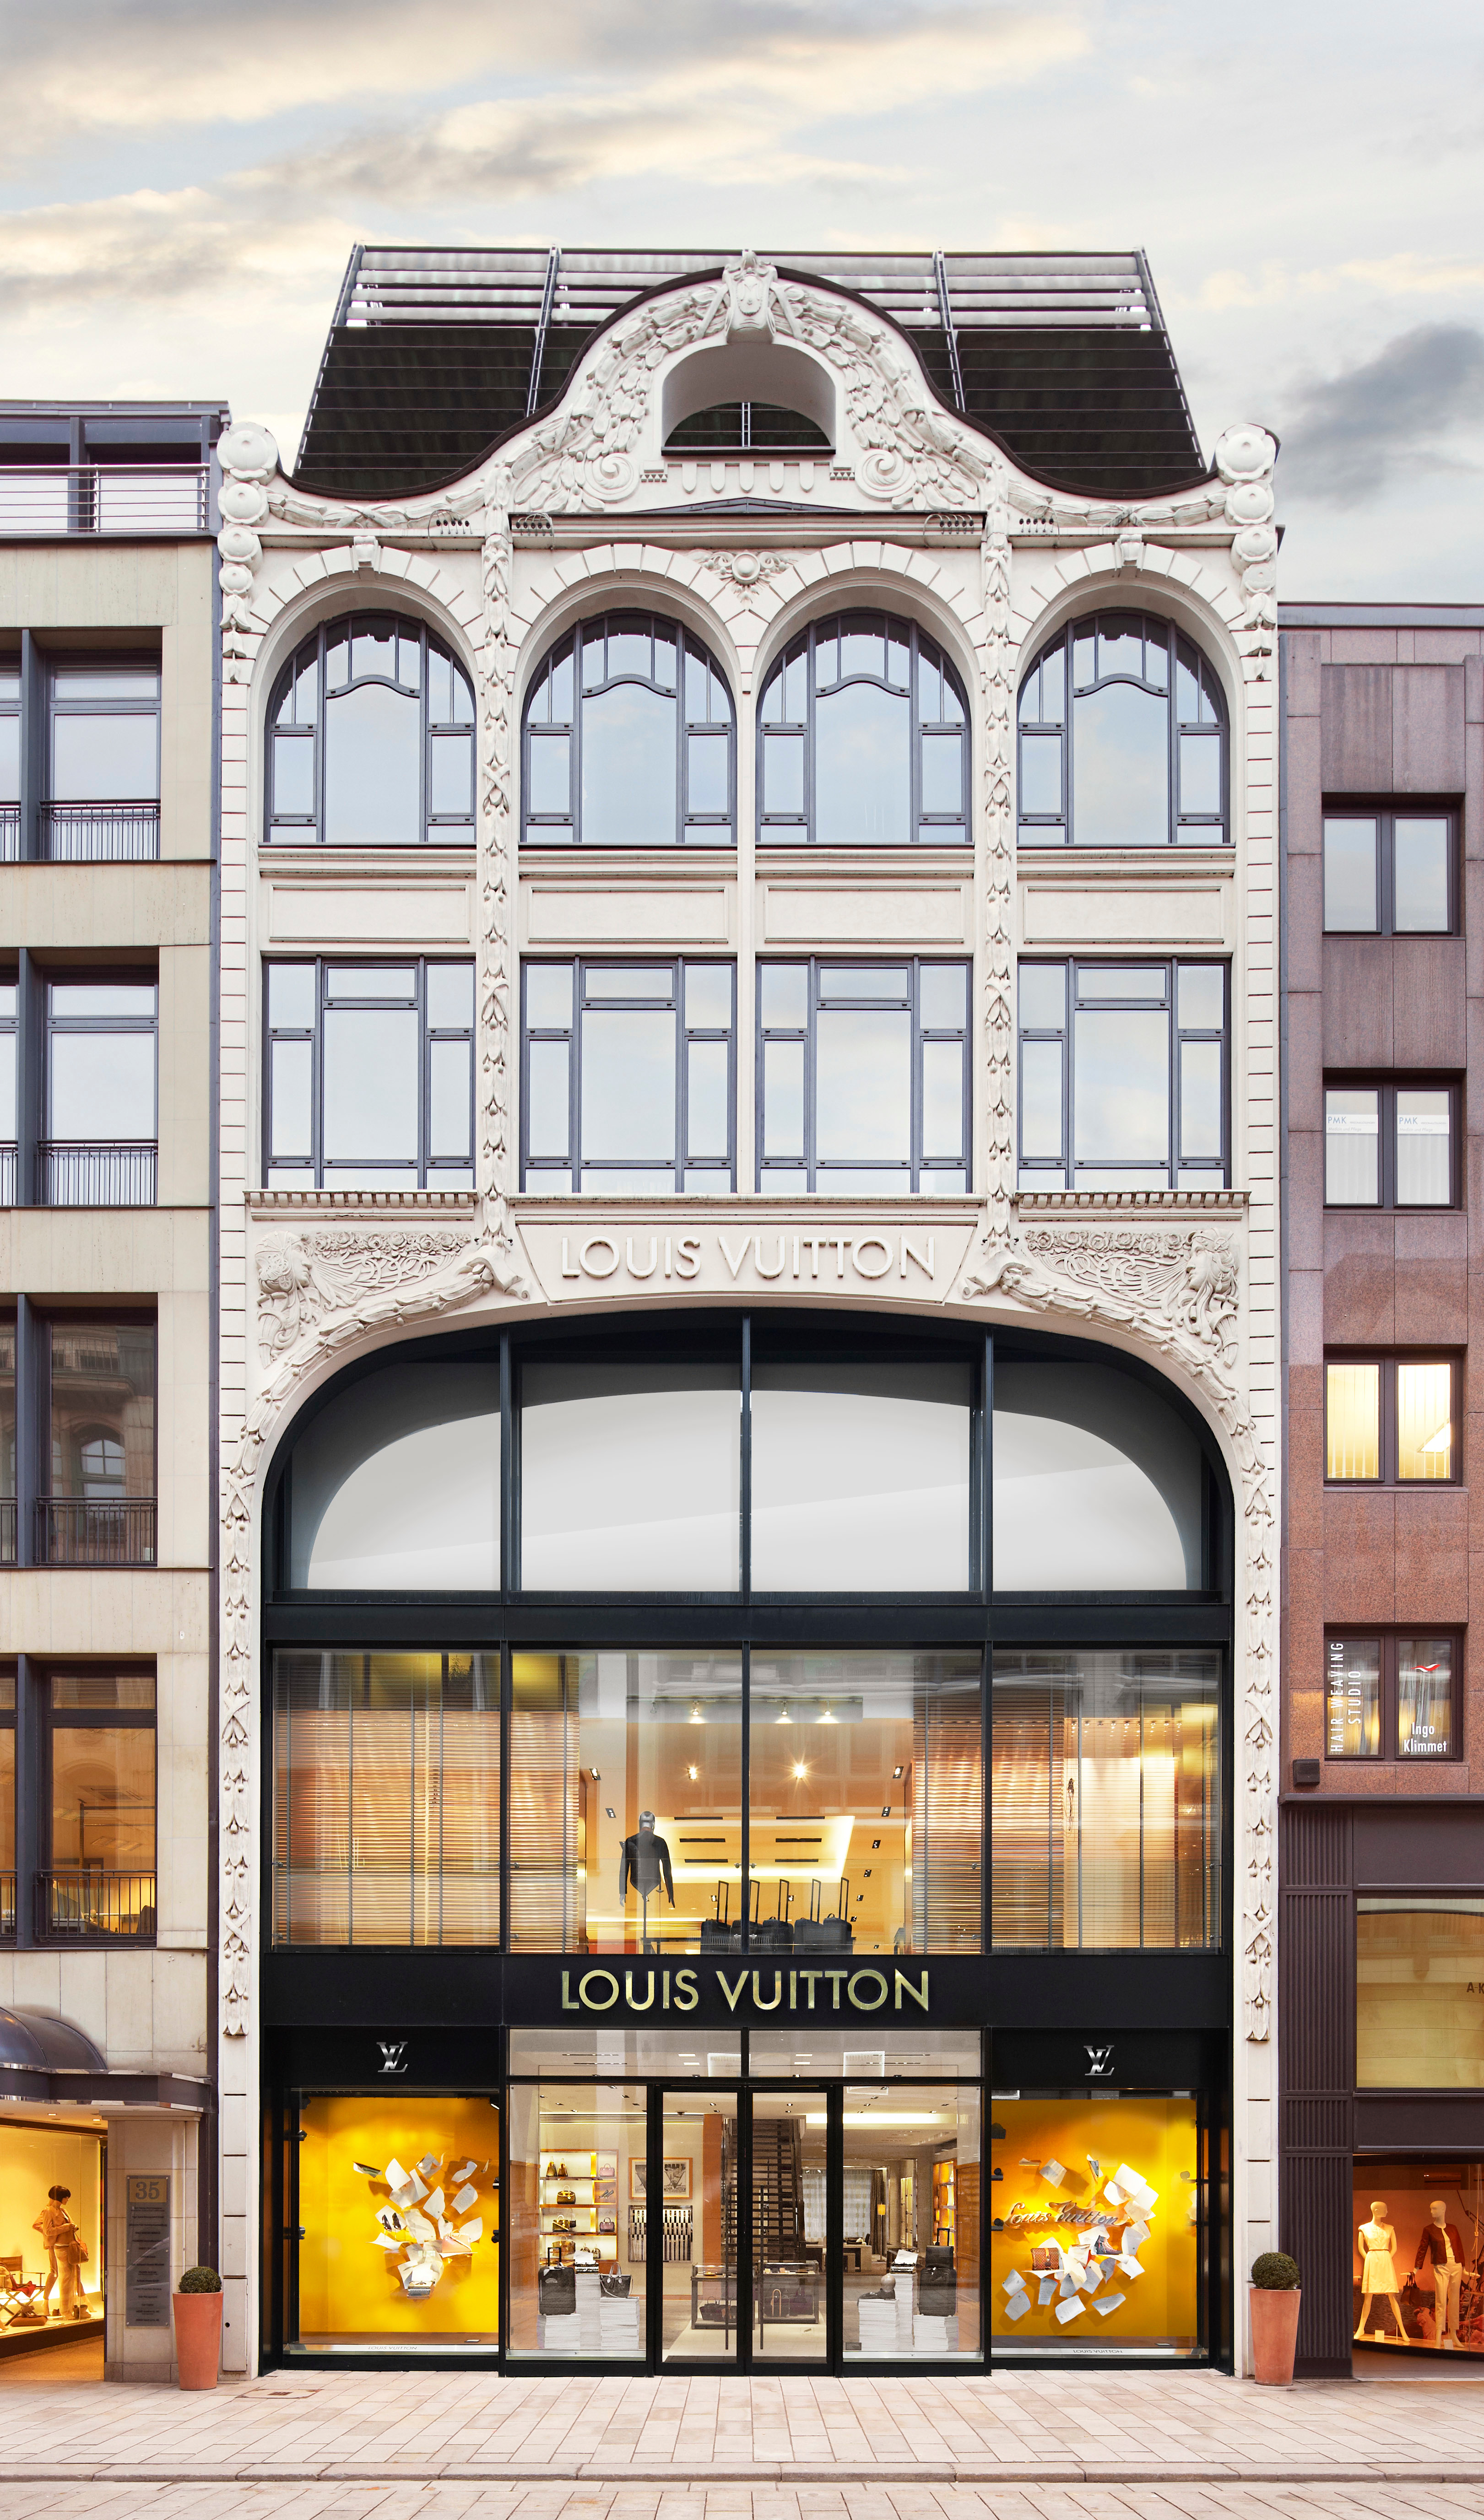 Louis Vuitton Hamburg - Lederwaren Und Reiseartikel (Kleinhandel) in Hamburg (Adresse ...